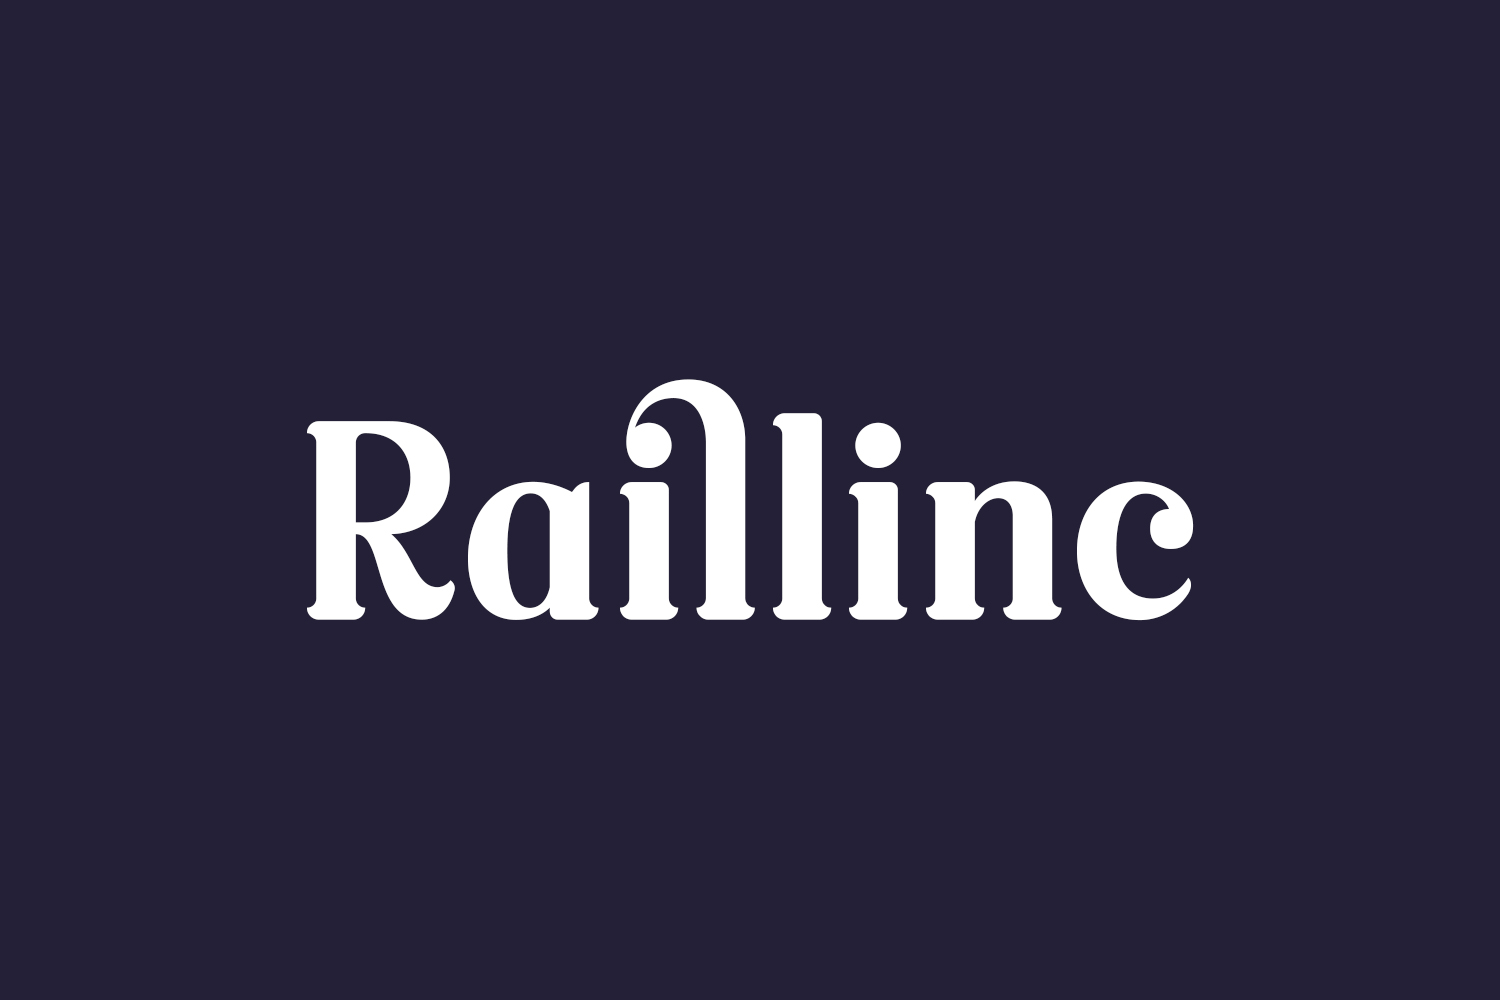 Raillinc Free Font